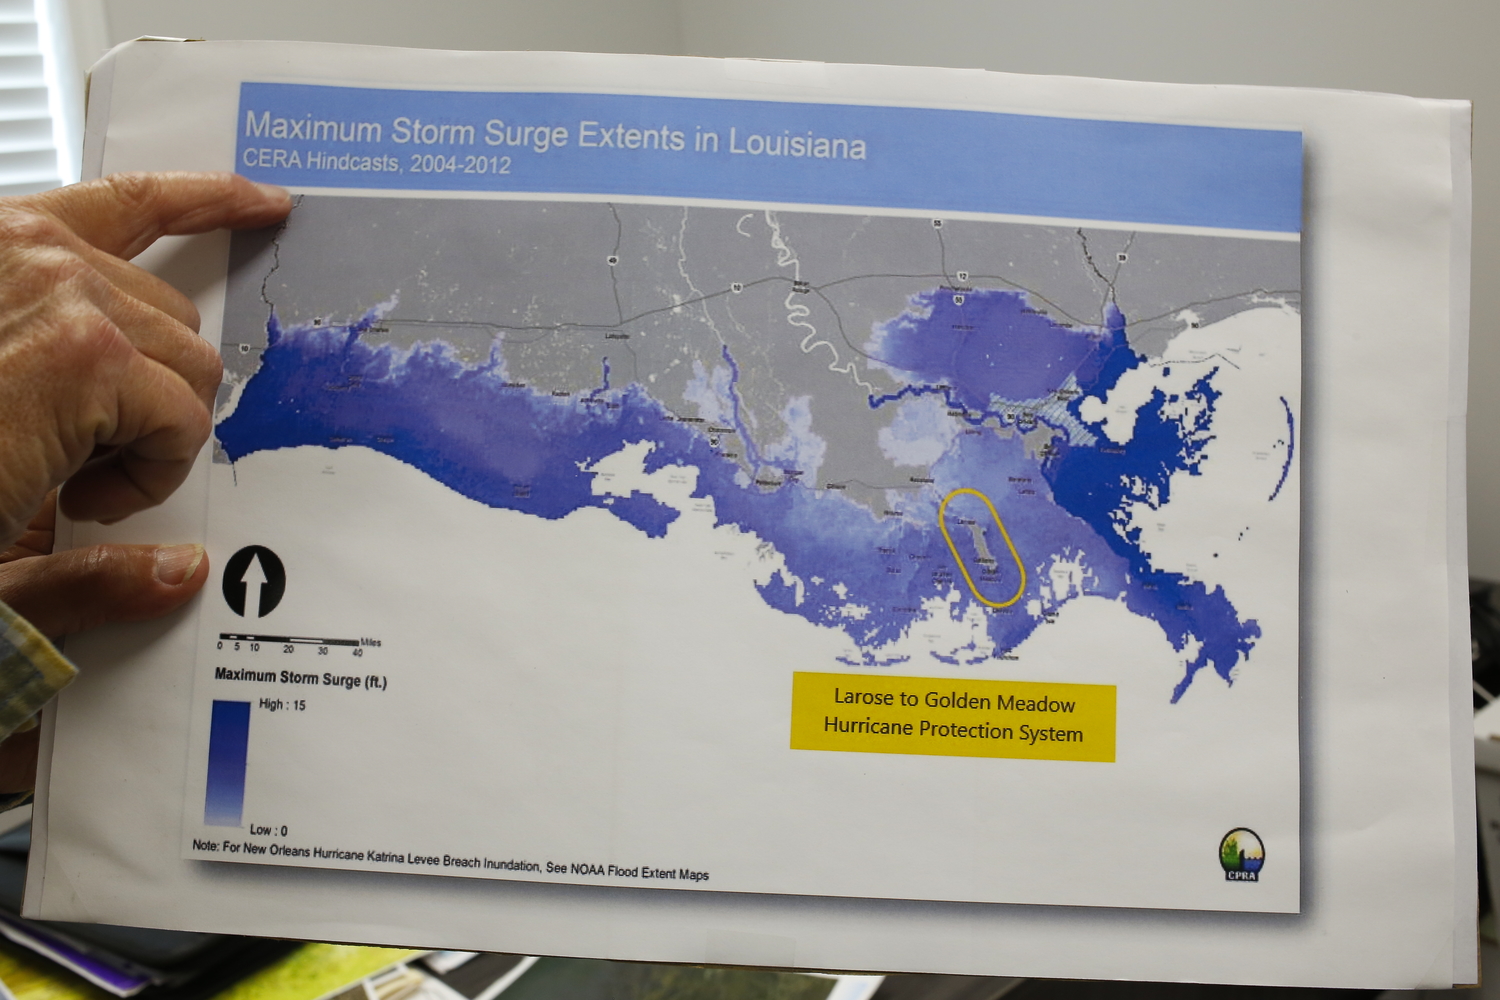 La carte montre le niveau des inondations en Louisiane entre 2004 et 2012. Avec la digue du bayou Lafourche, la zone est protégée (entourée en jaune) © Globe Reporters